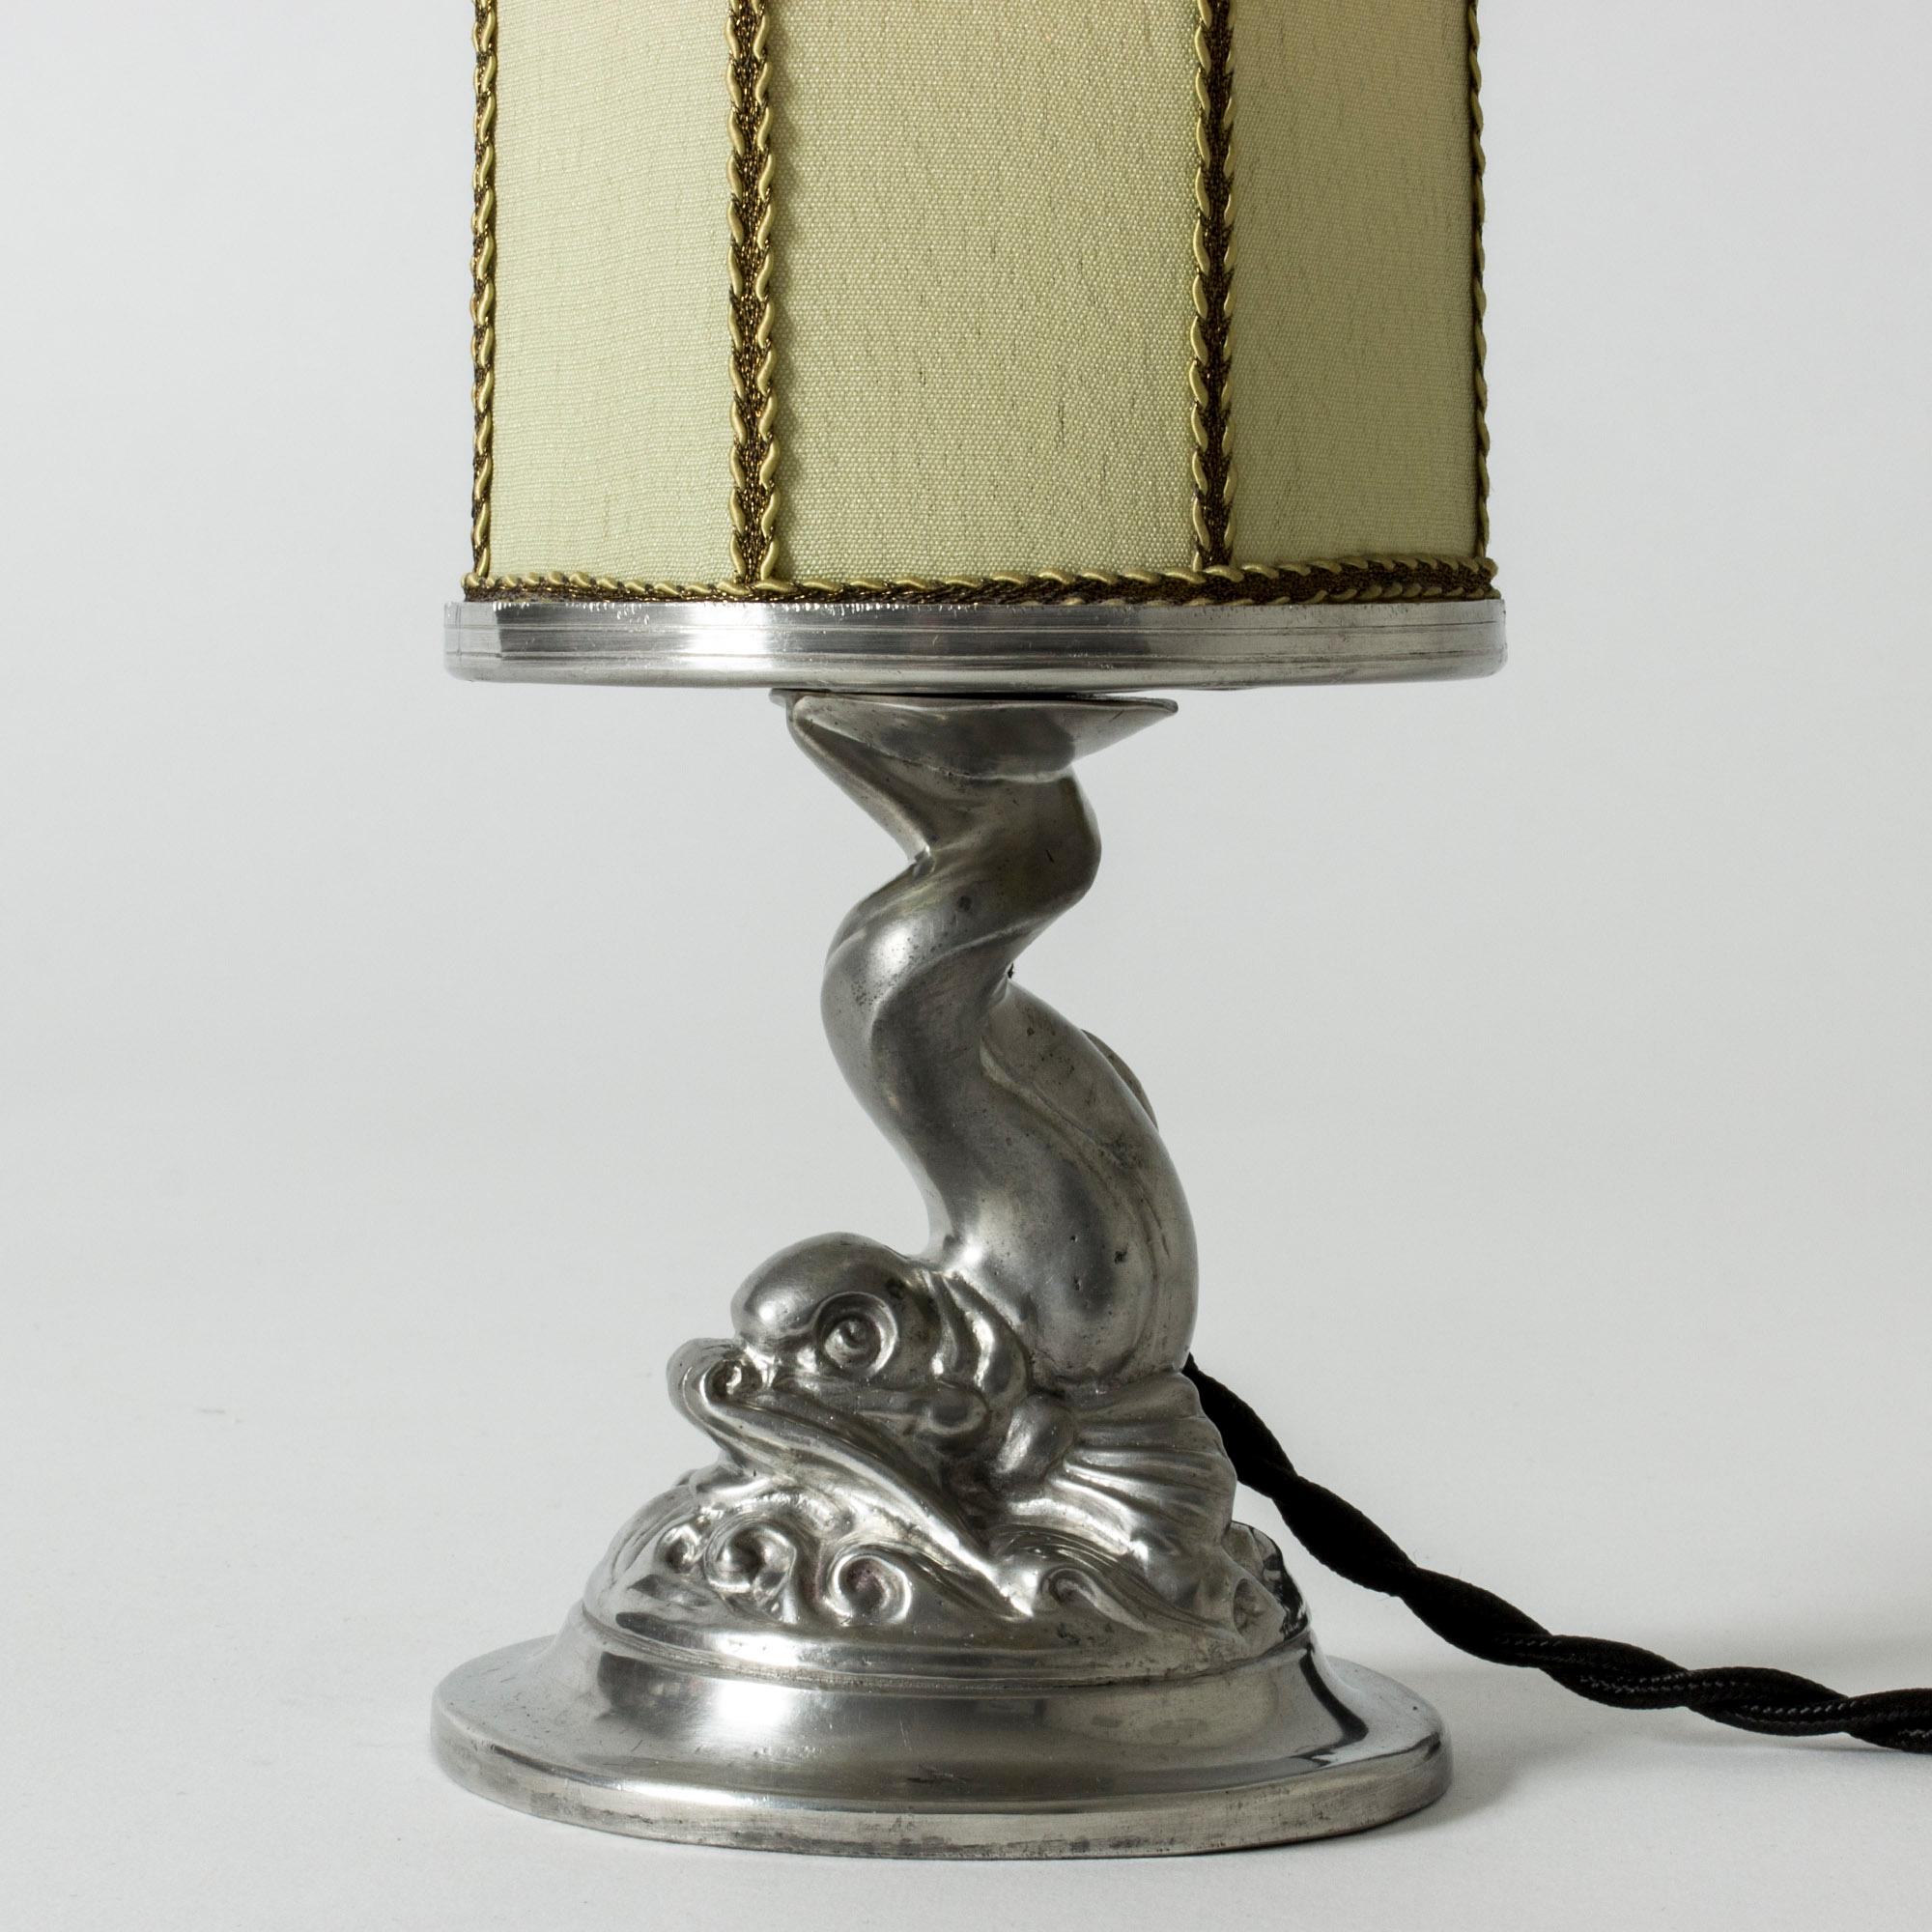 Modernistische Tischlampe aus Zinn, GAB, Schweden, 1932 (Mitte des 20. Jahrhunderts)